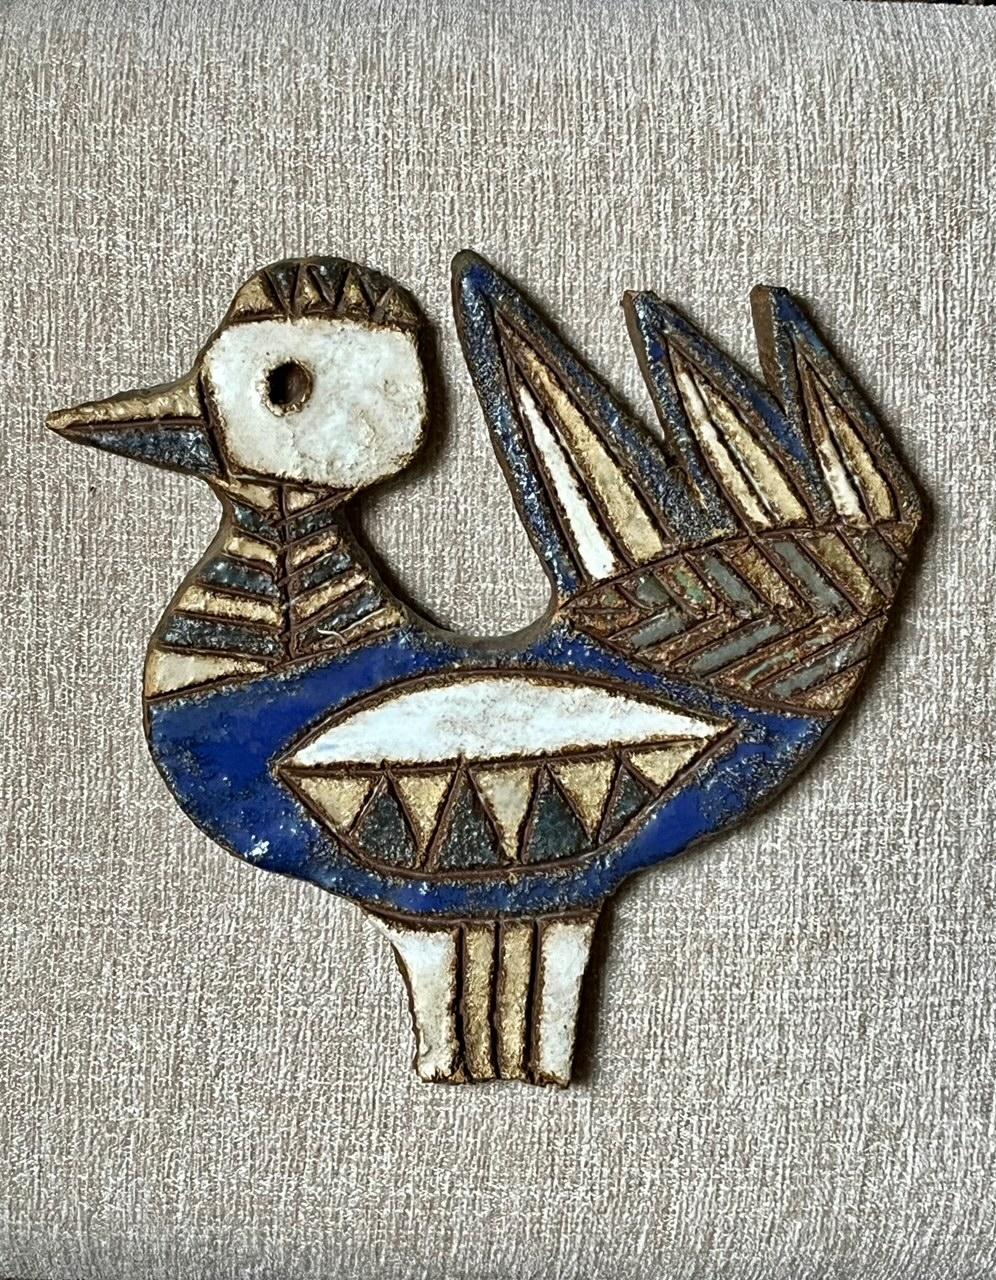 Grande et inhabituelle décoration murale en céramique représentant un oiseau.
Céramique émaillée dans les tons bleu, blanc, vert et jaune.
Signé au dos 